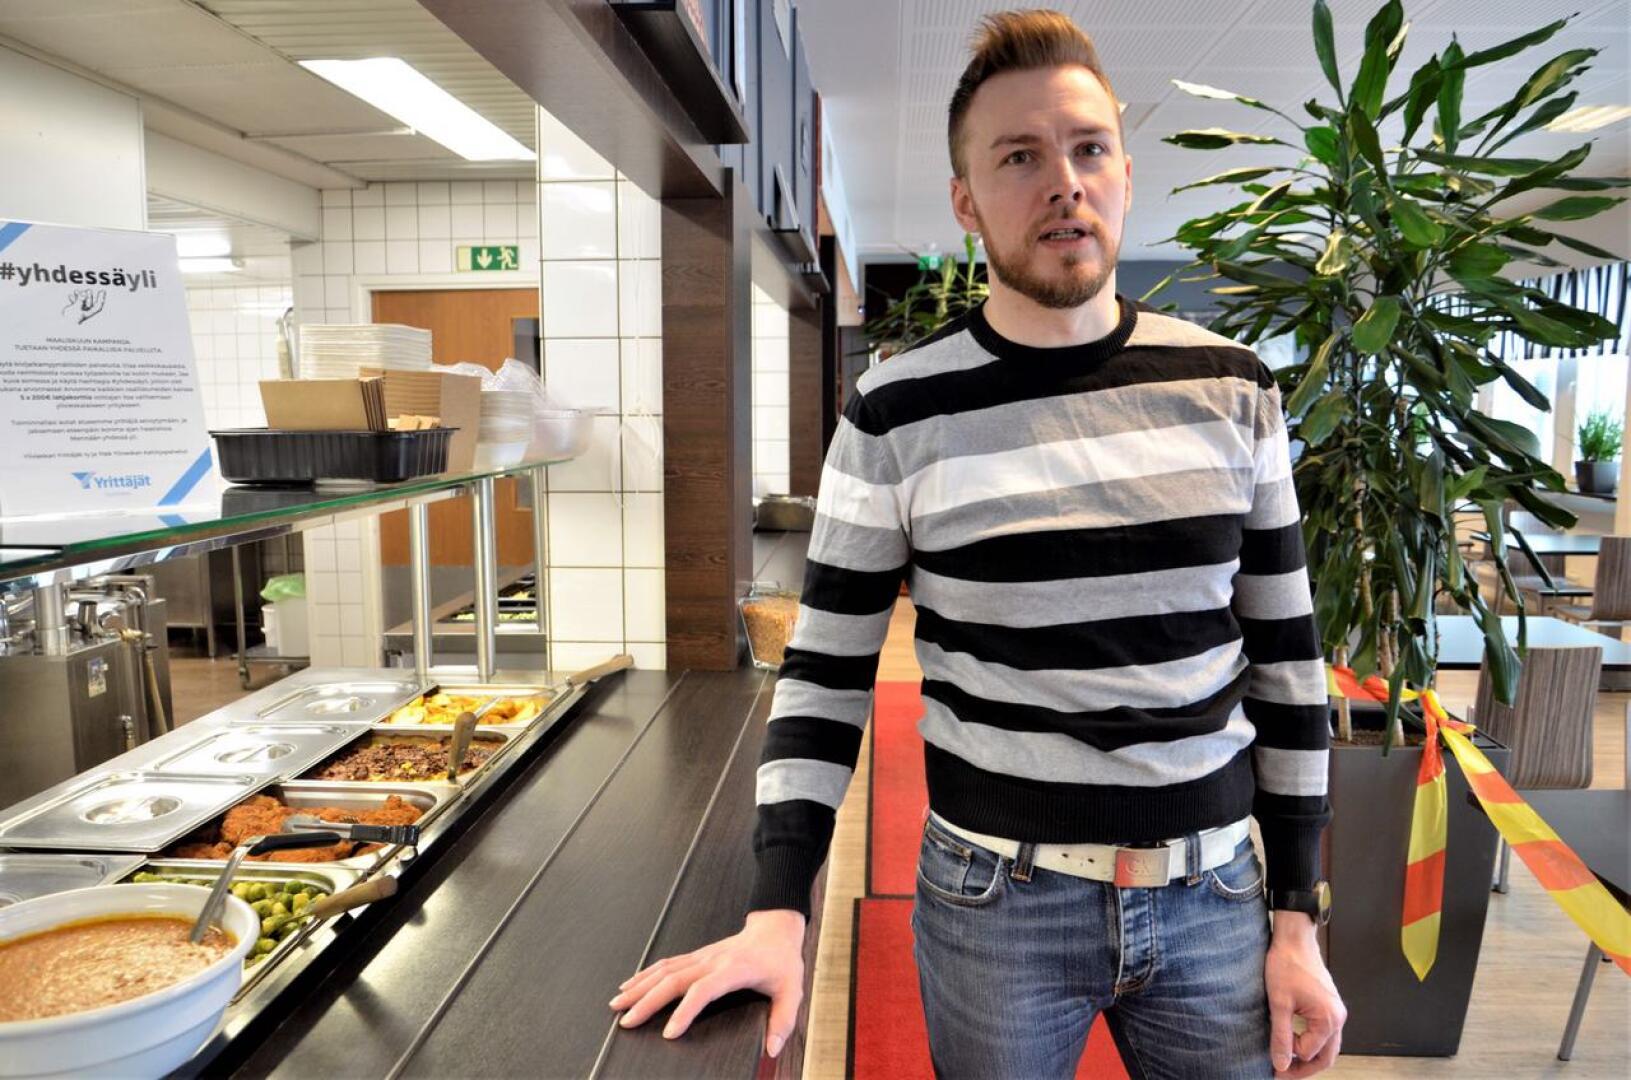 Ravintolapäällikkö Juha-Matti Timlin kertoi Facebook-päivityksessään, että jatkuvien rajoitusten edessä Pikkuveli sulkee Lintutien ravintolansa tappioiden minimoimiseksi.